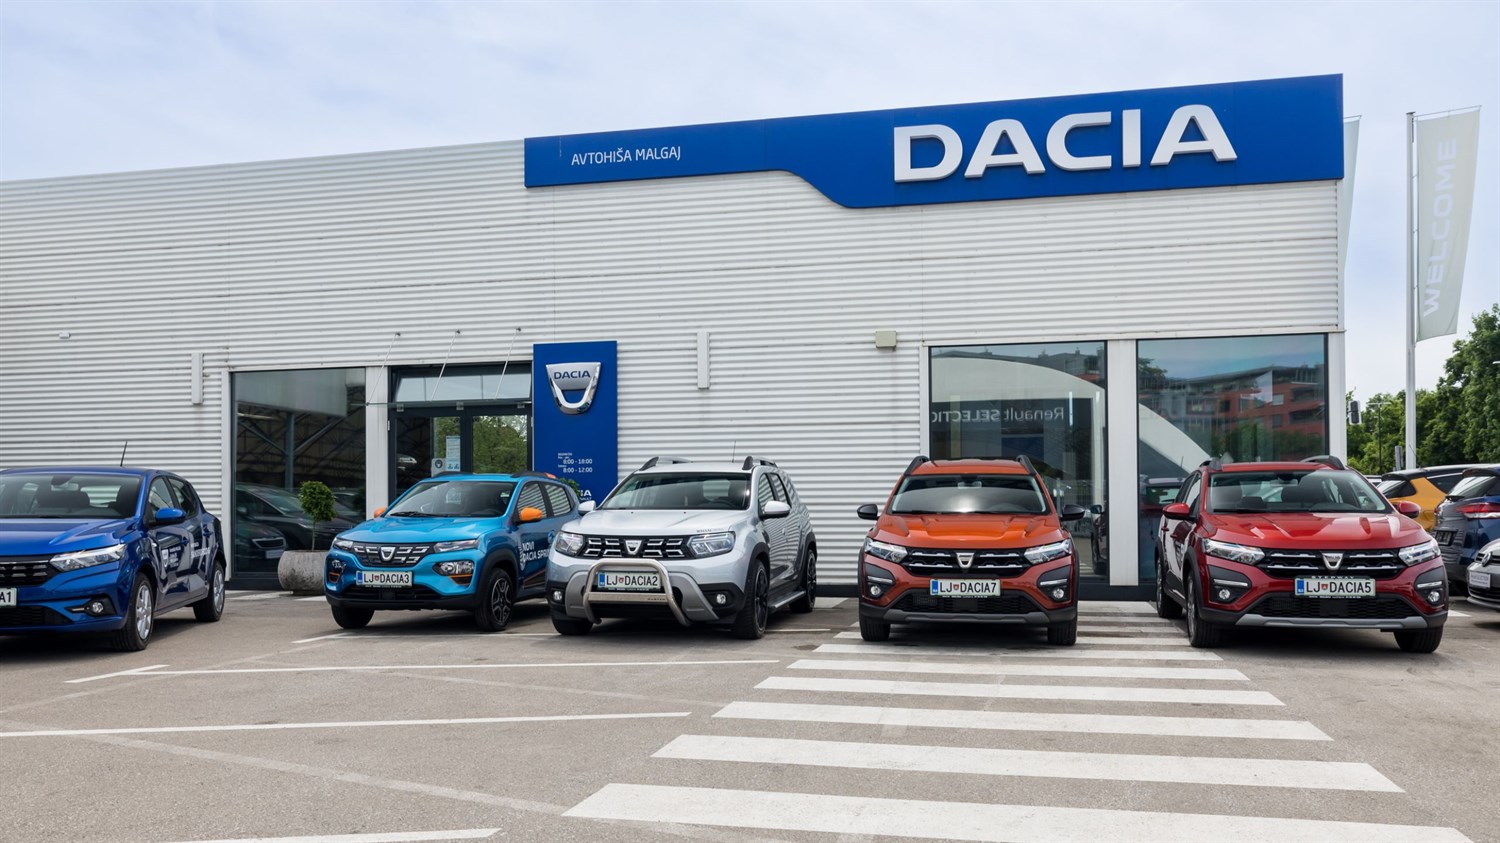 Prodaja vozil Dacia - avtohiša Malgaj